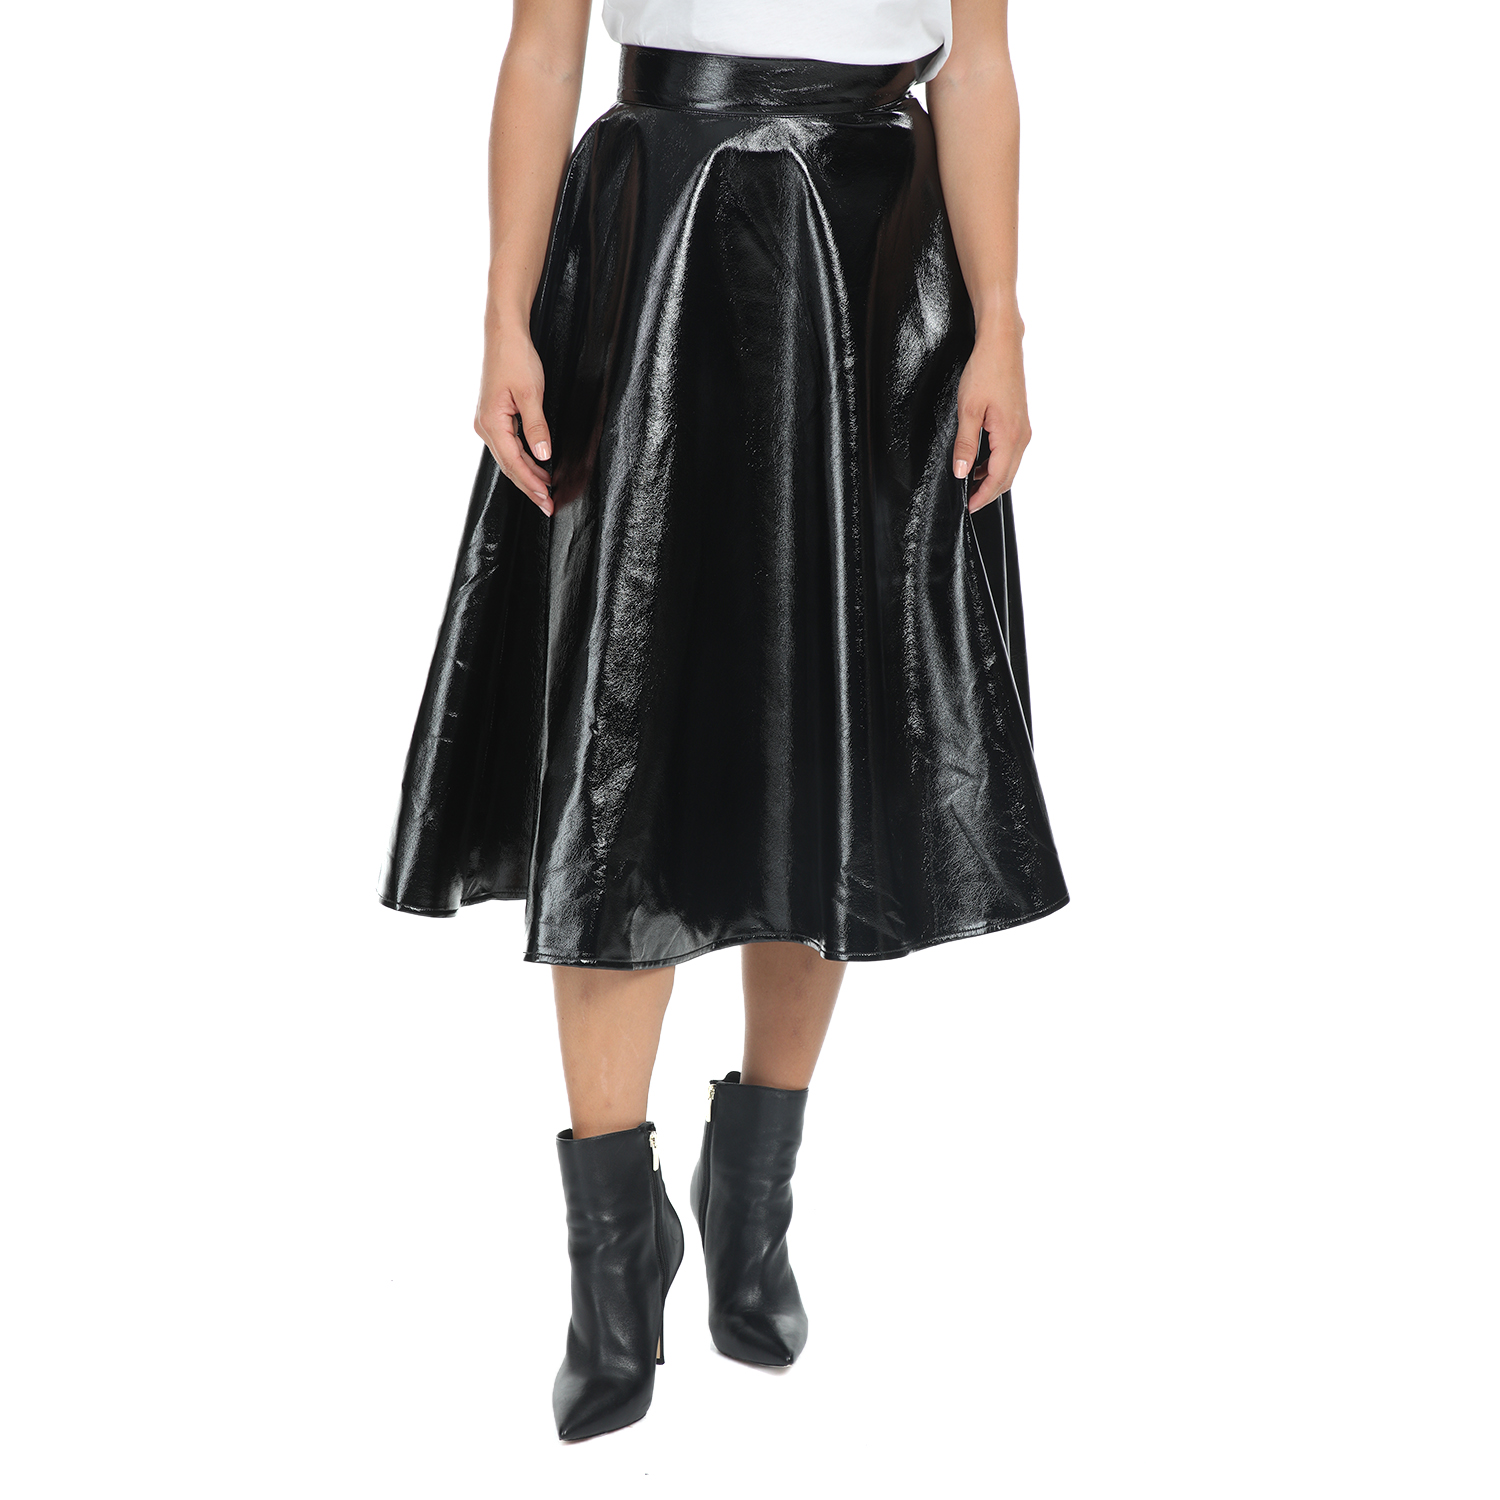 Γυναικεία/Ρούχα/Φούστες/Μέχρι το γόνατο IMPERIAL - Γυναικεία midi φούστα IMPERIAL μαύρη